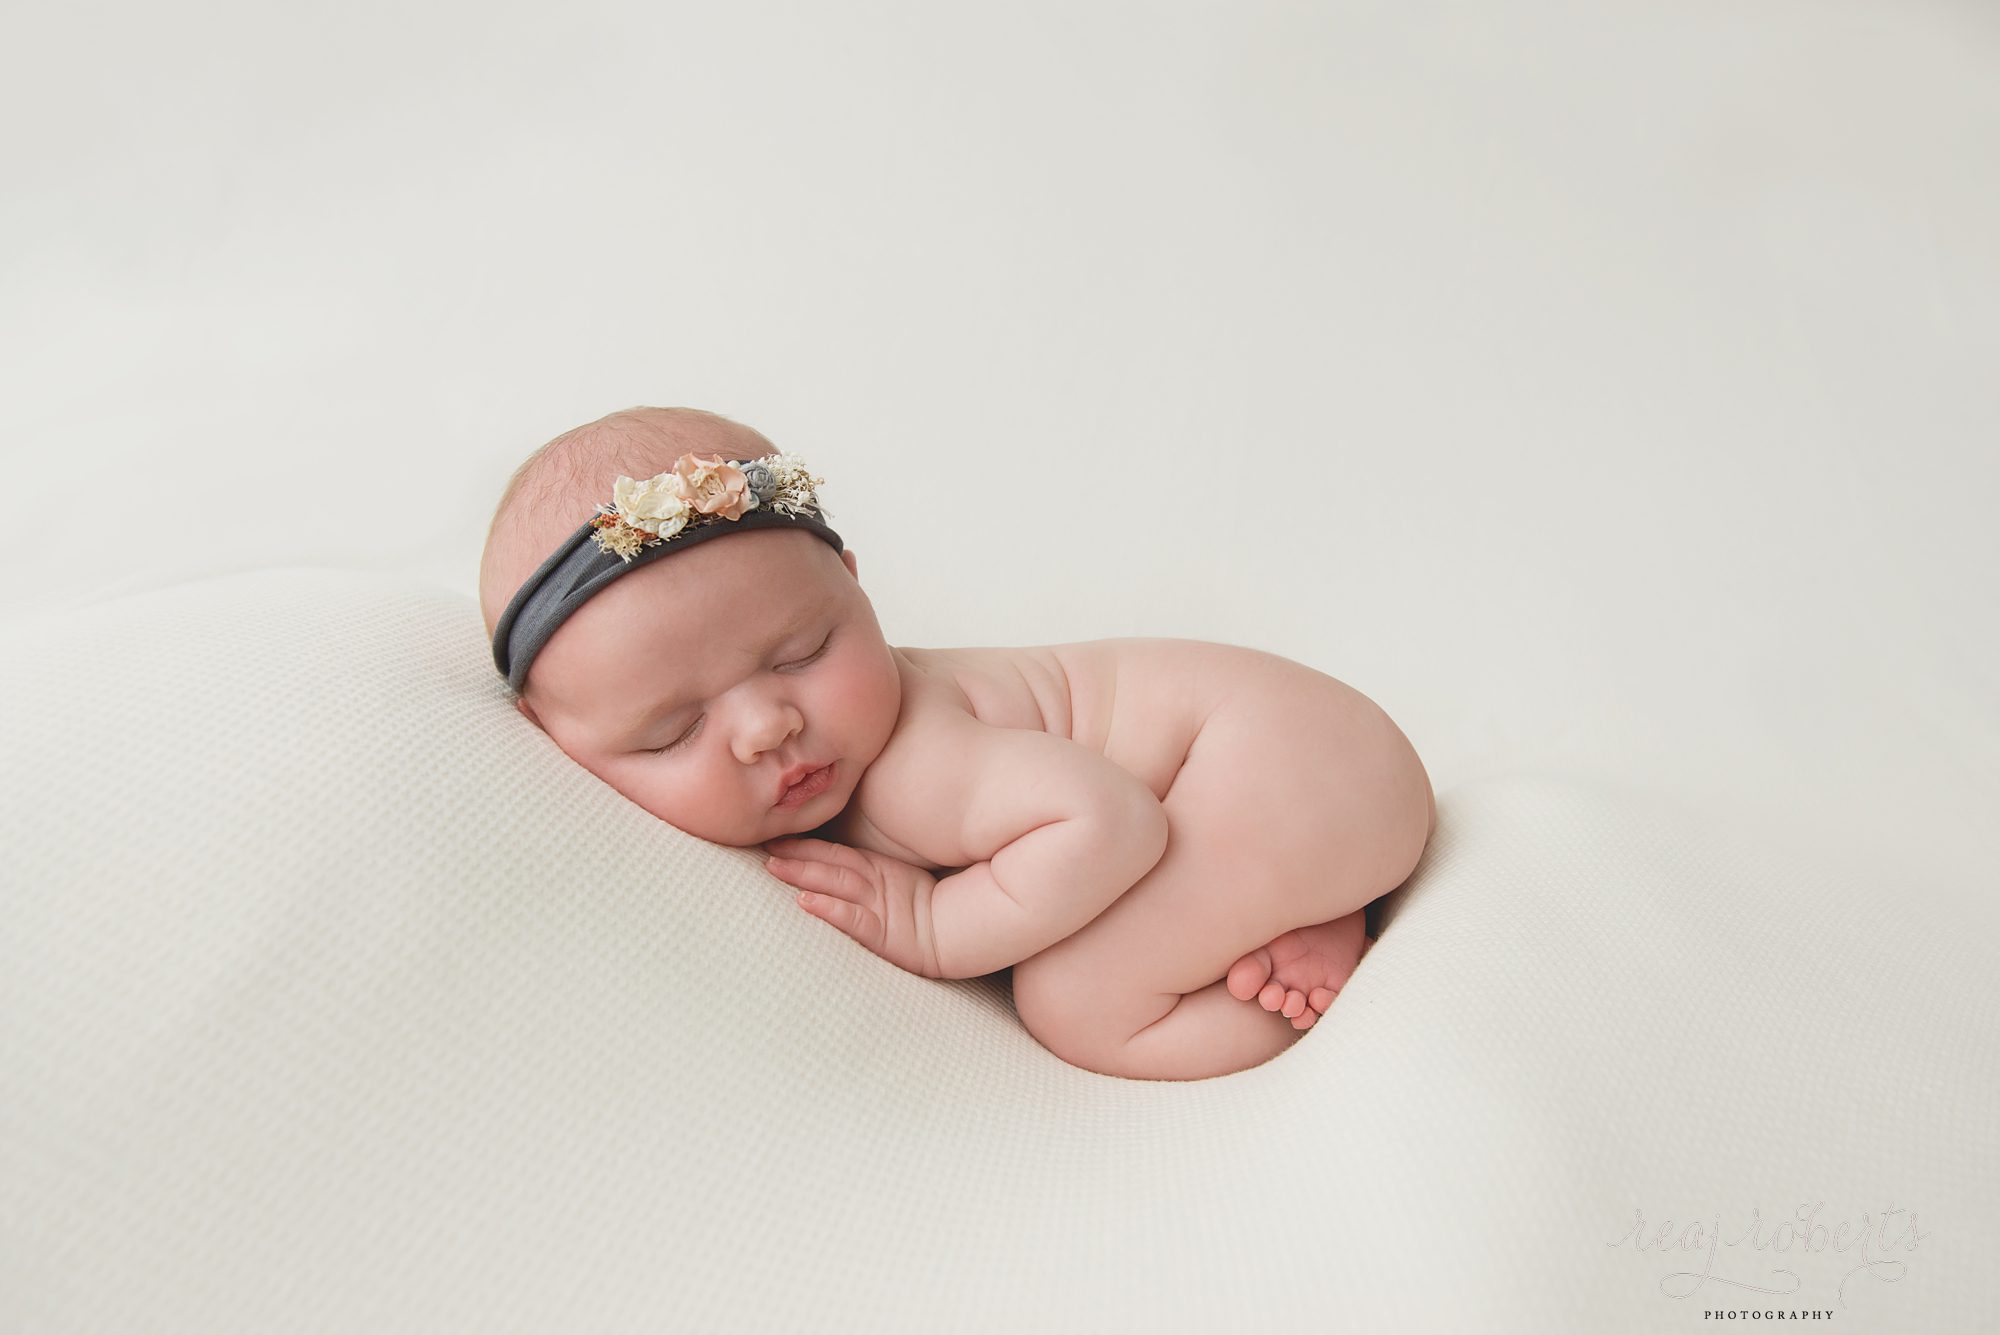 Squishy newborn baby girl photo tushy up pose | Reaj Roberts Photography